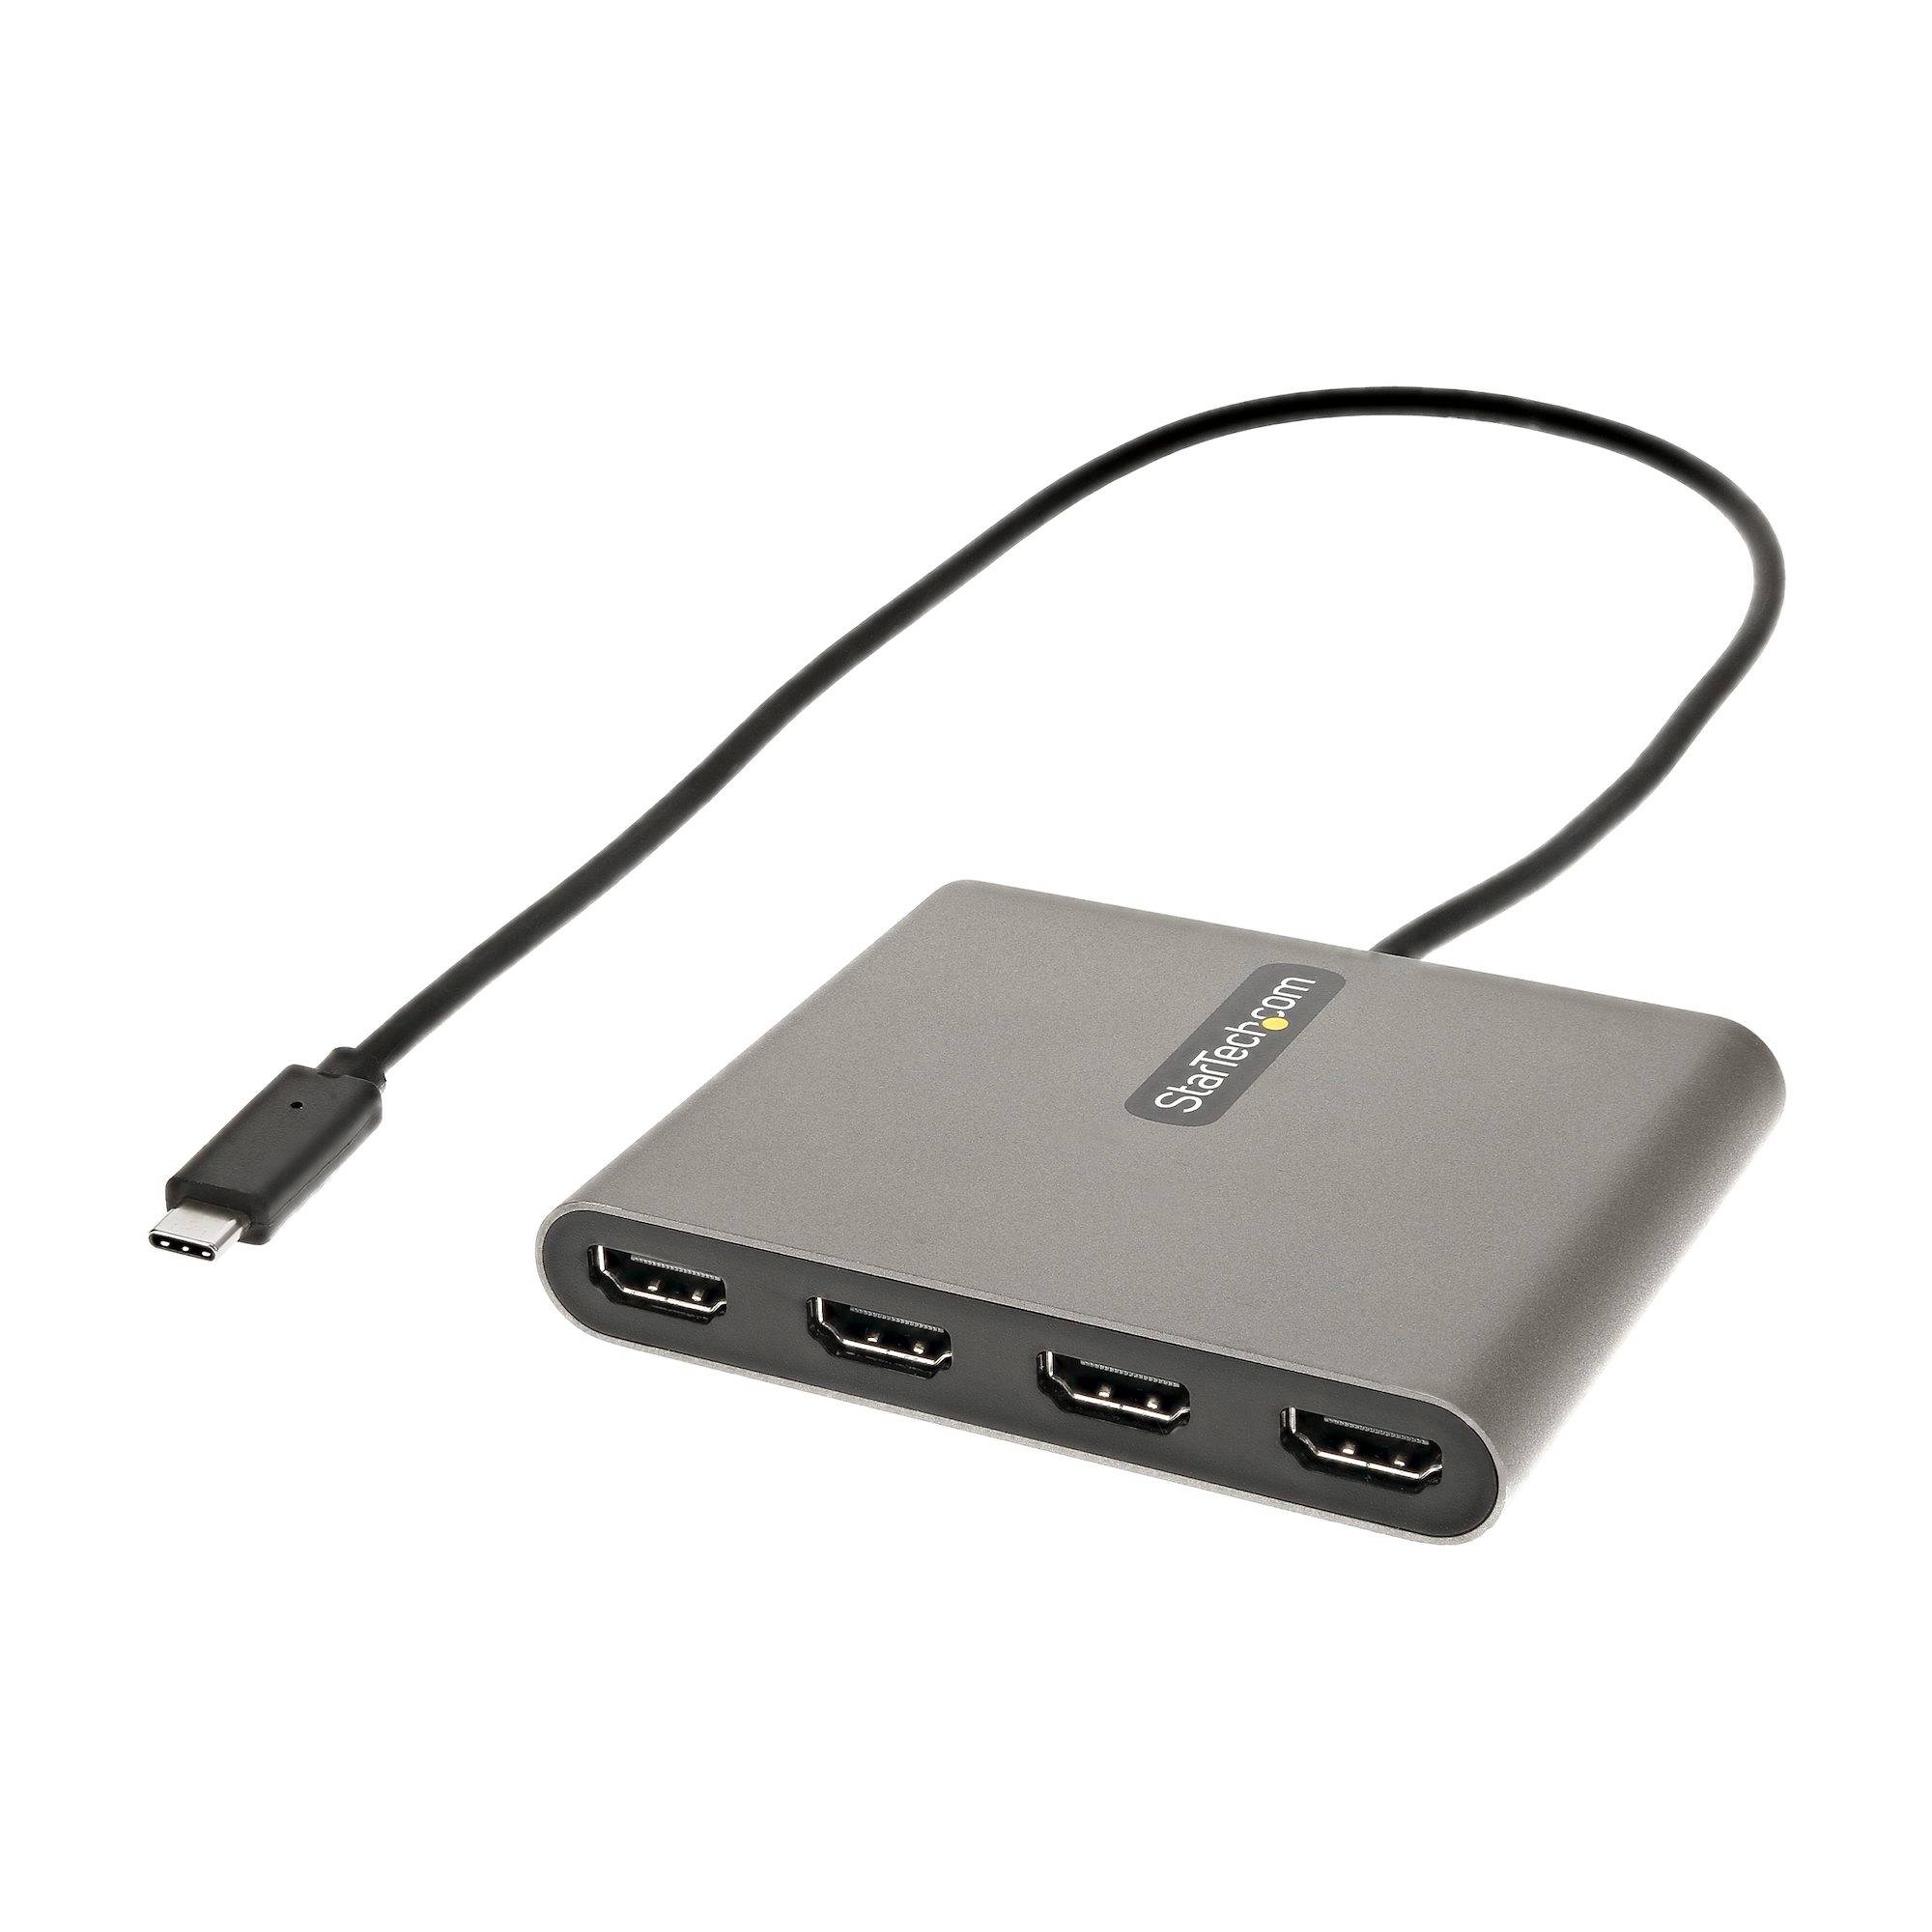 Rca Informatique - Image du produit : ADAPTATEUR USB C VERS 4 HDMI CARTE VIDEO/GRAPHIQUE EXTERNE